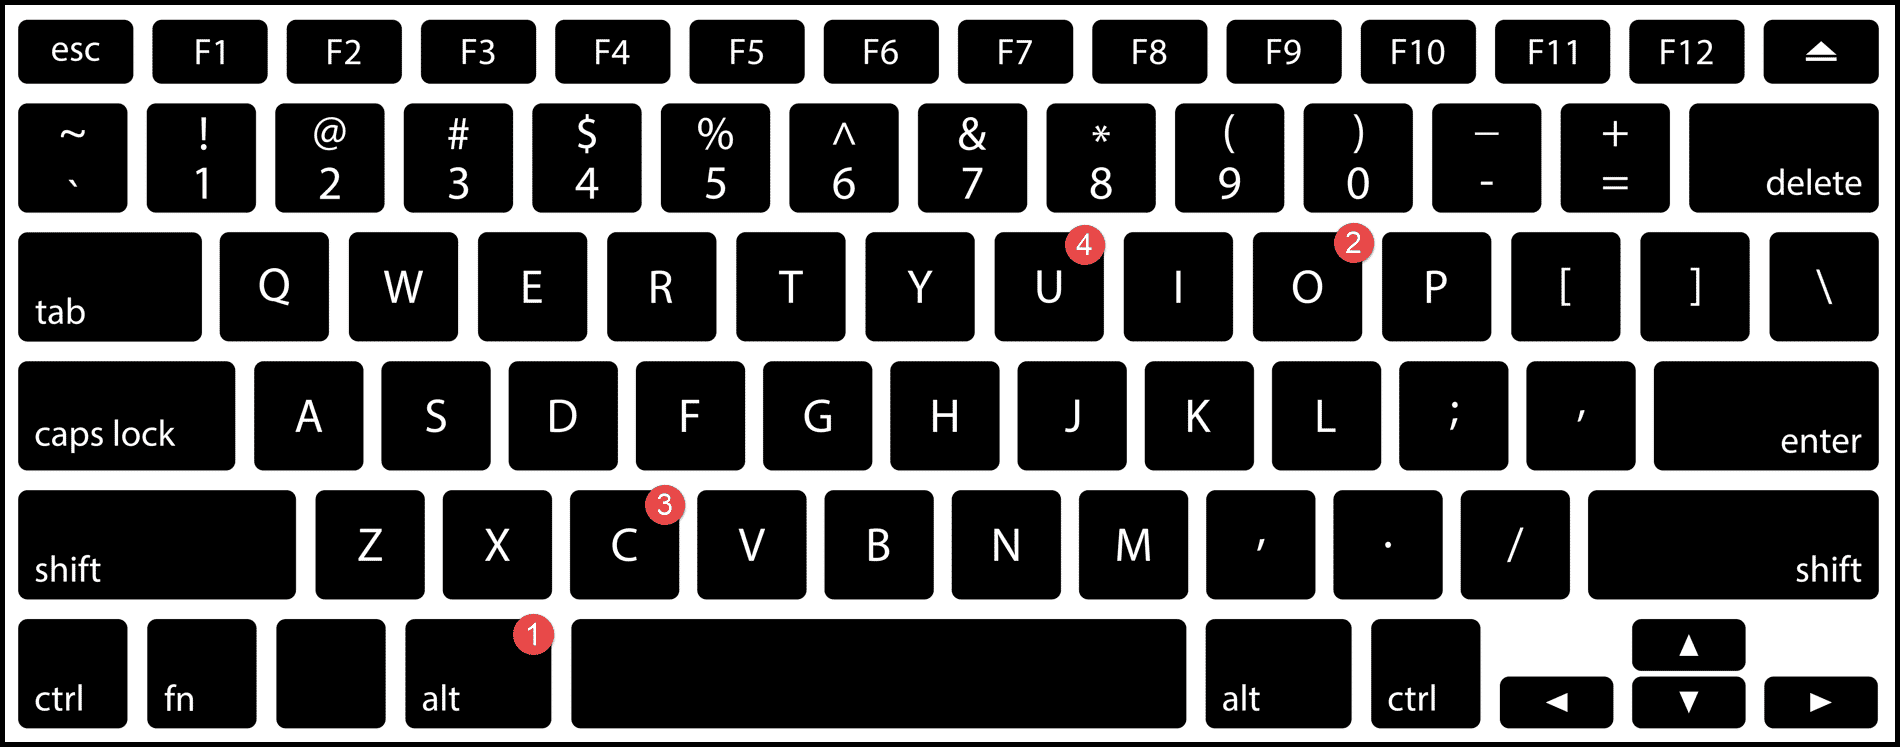 mostra-colonna-usando-la-scorciatoia-da-tastiera